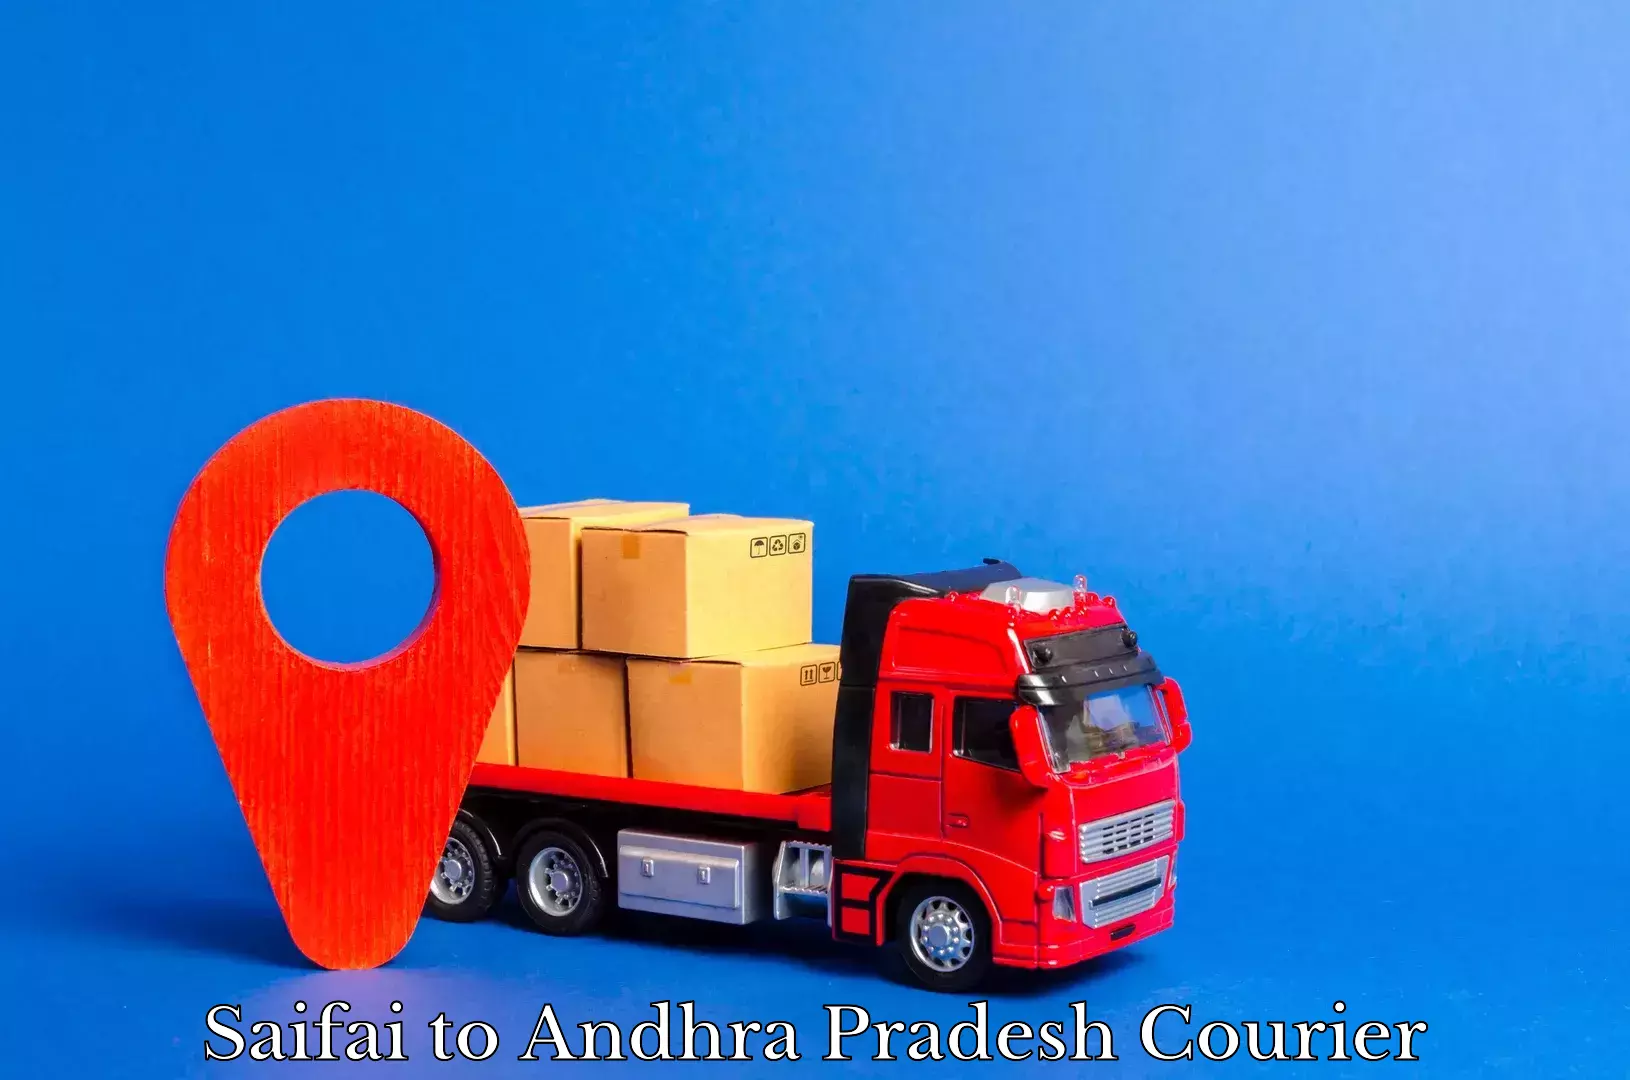 Affordable parcel rates in Saifai to Andhra Pradesh